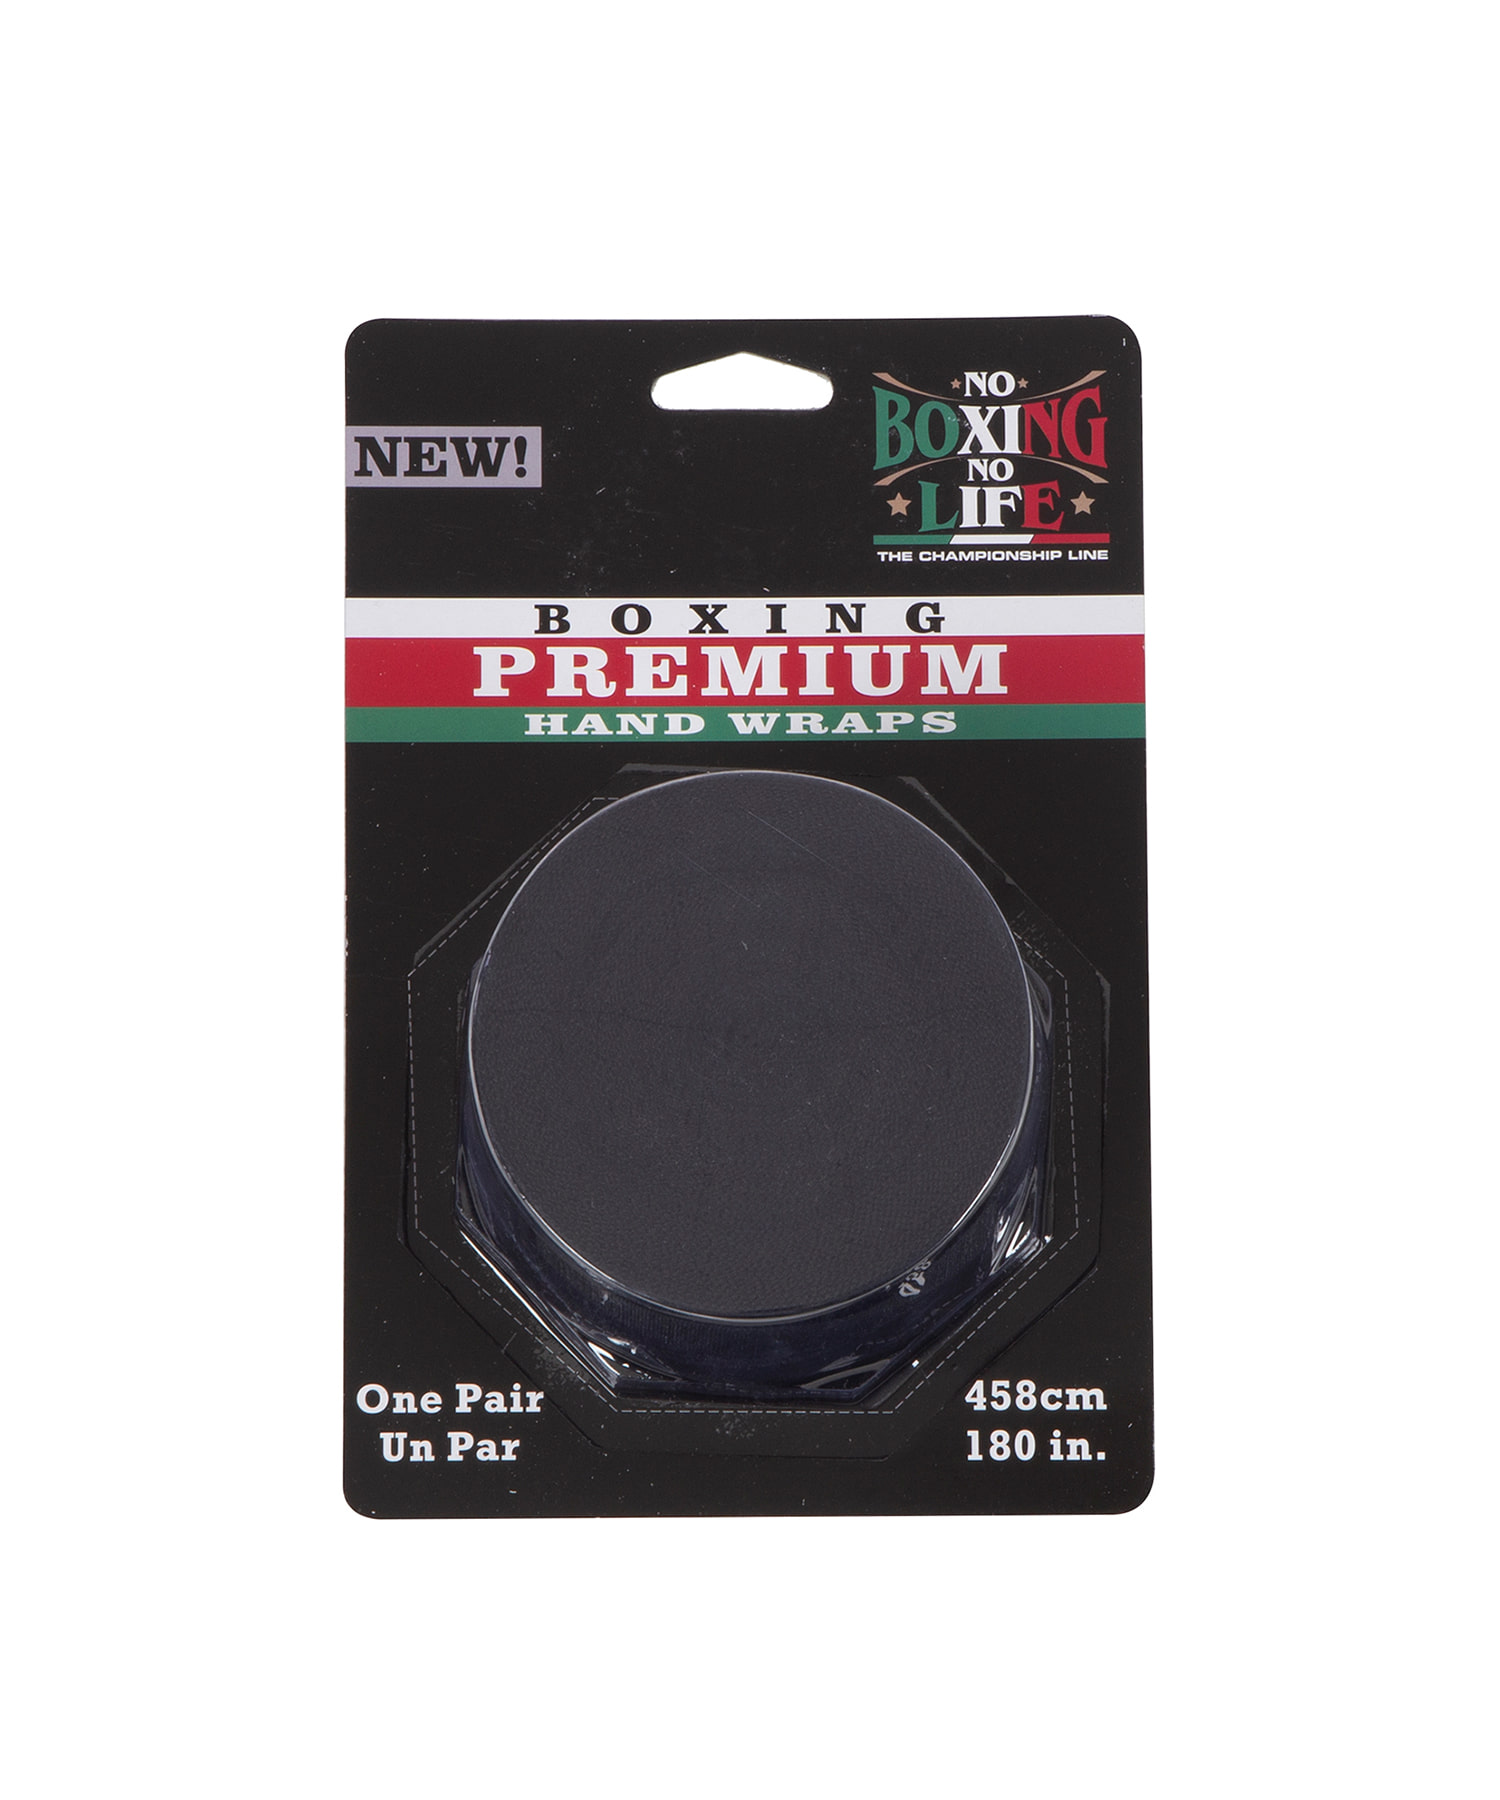 NBNLC112 OG Logo Premium Hand Wraps - Black